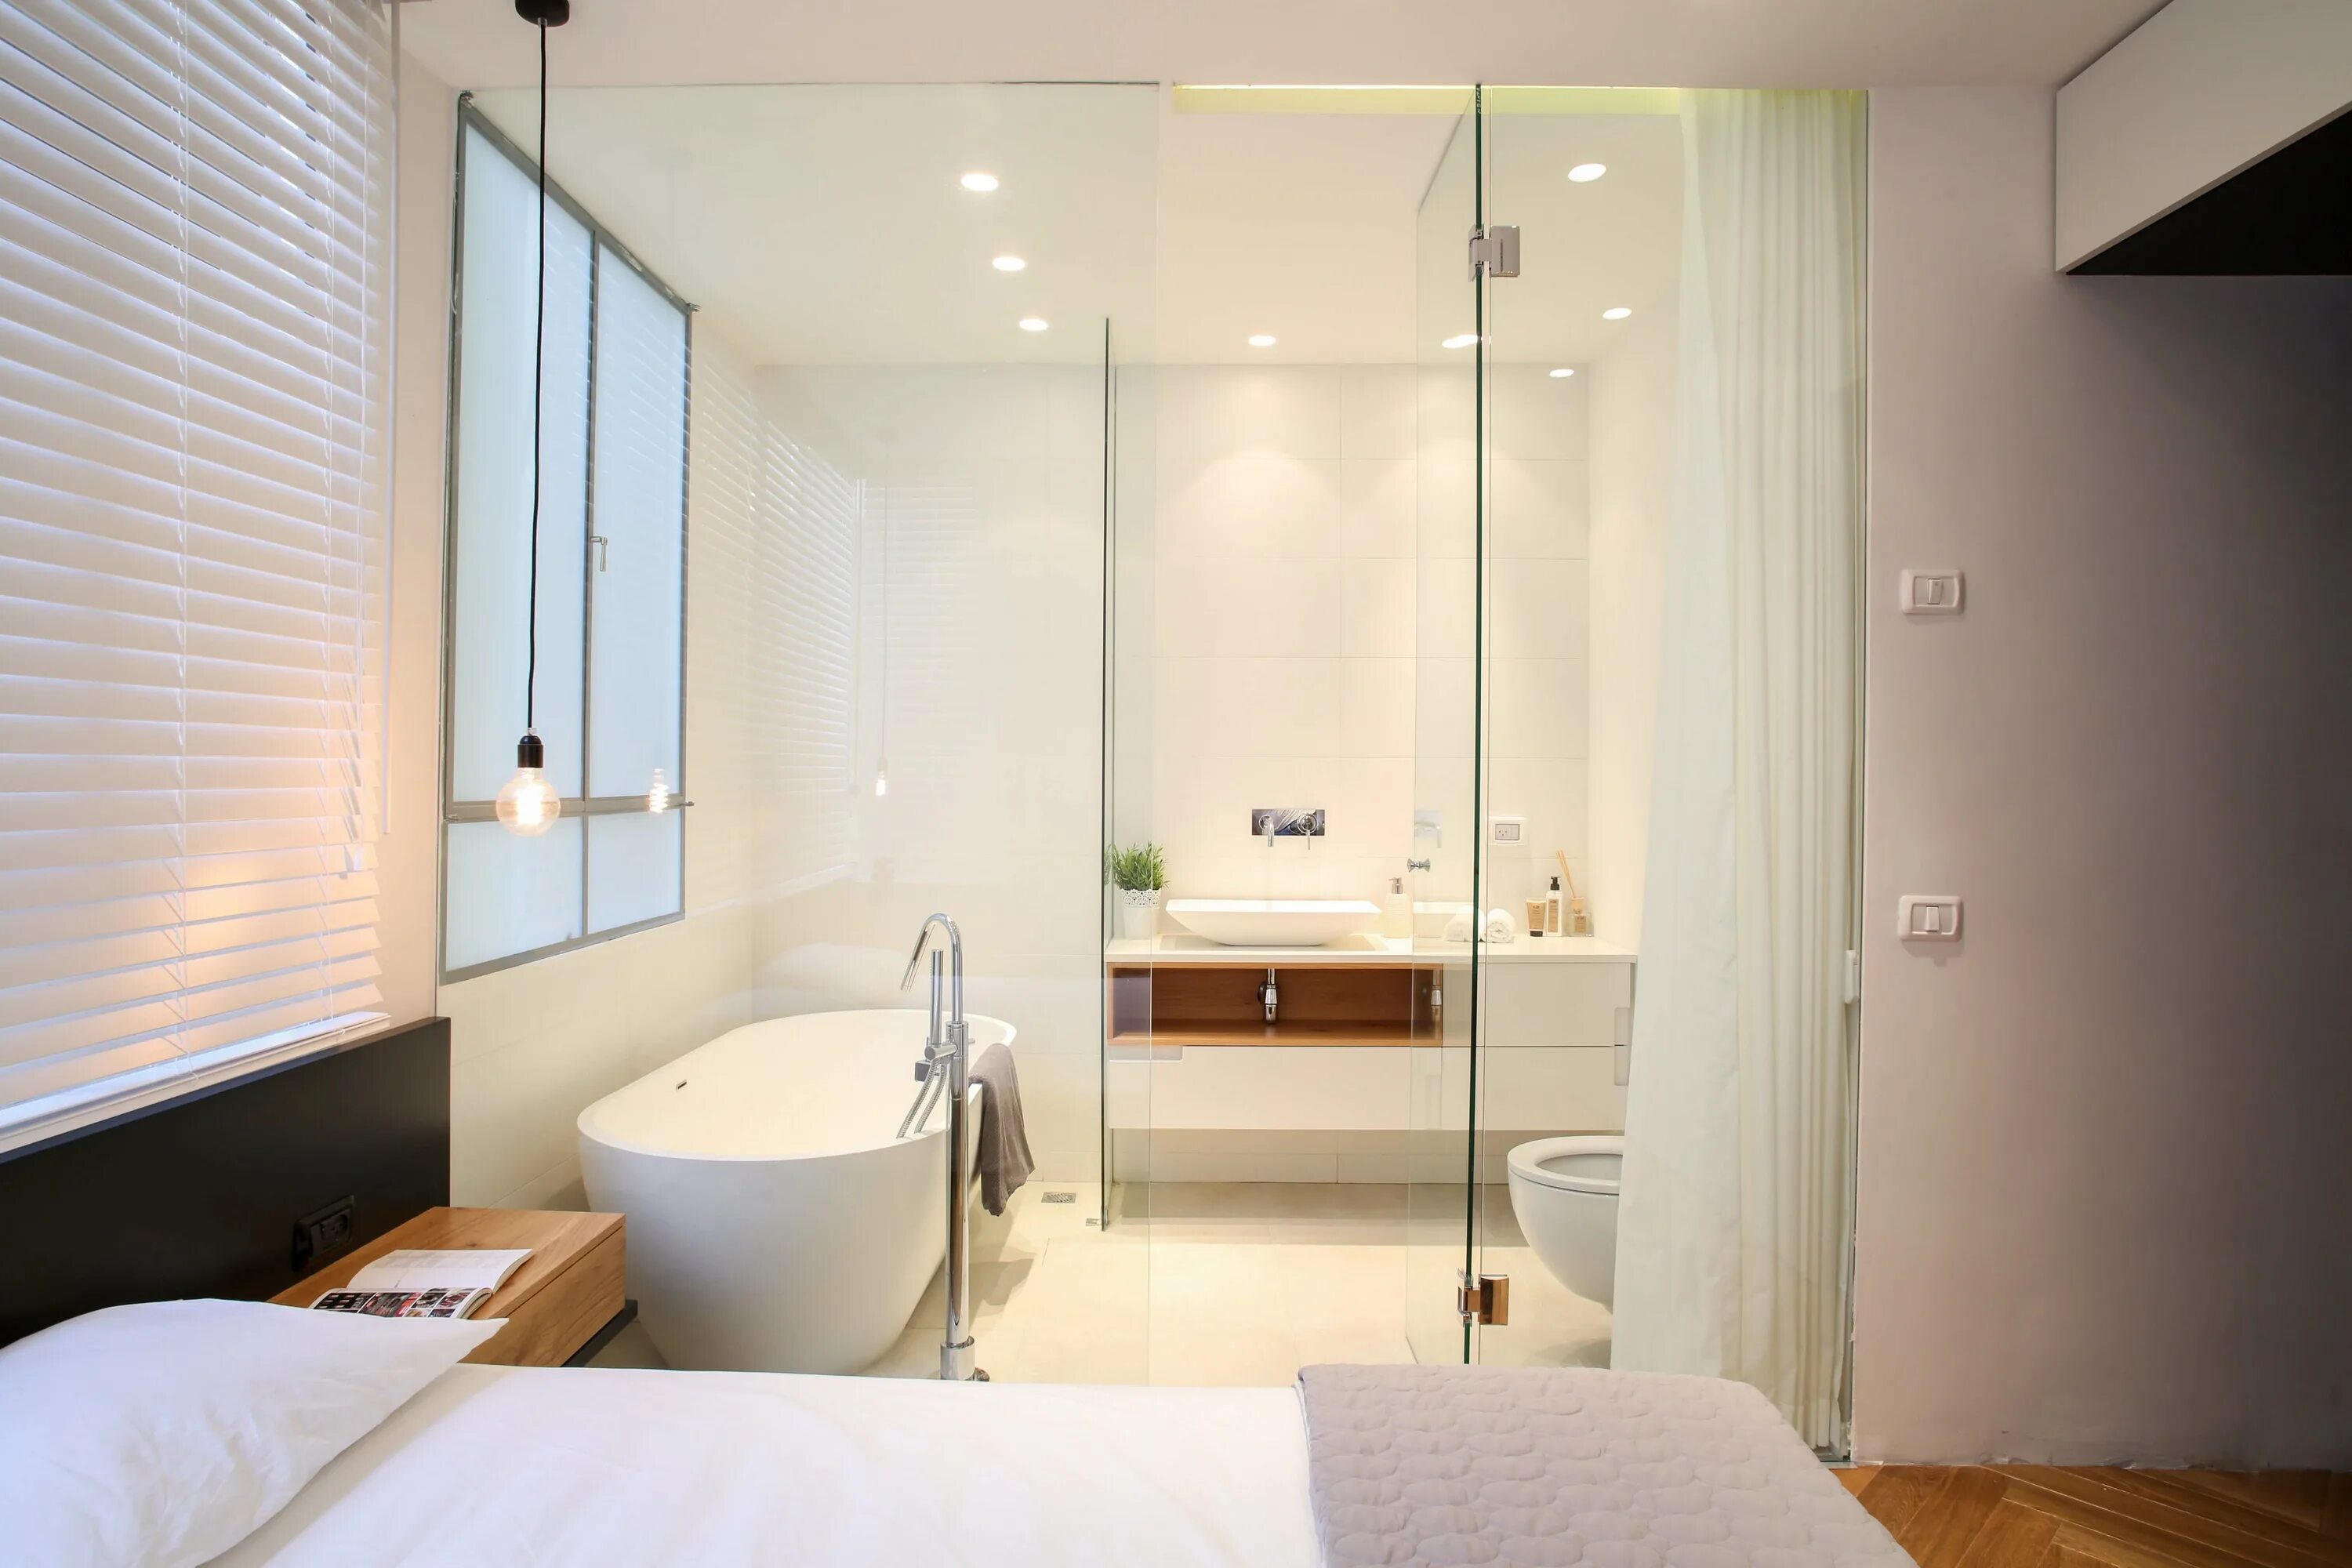 Ванная совмещенная со спальней. Ванная комната со стеклянной перегородкой. Ванная комната со стеклянными стенами. Ванная со стеклянной стеной. Ванная комната с перегородкой дизайн